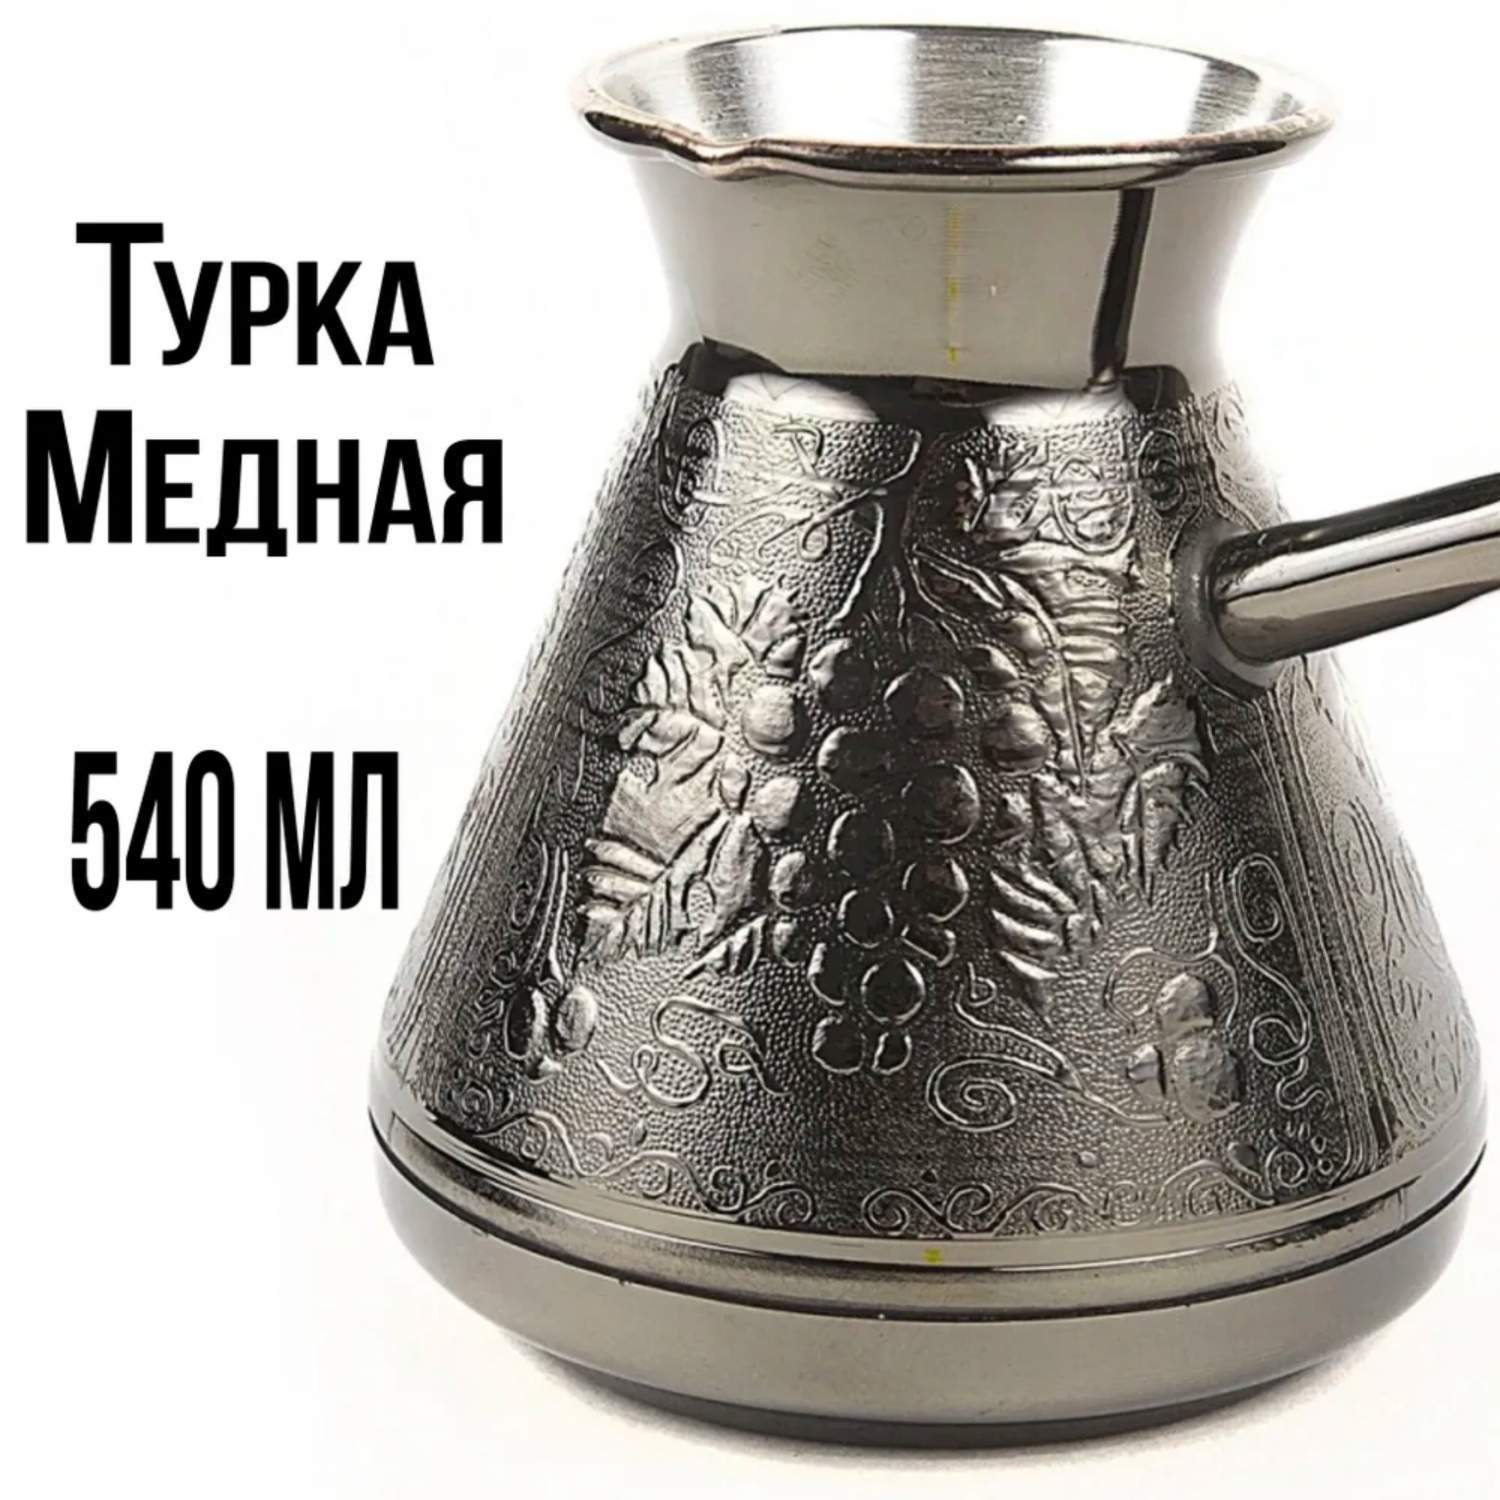 Турка ПЯТИГОРСК для кофе медная джезва 540 мл пр-во Россия Виноград .